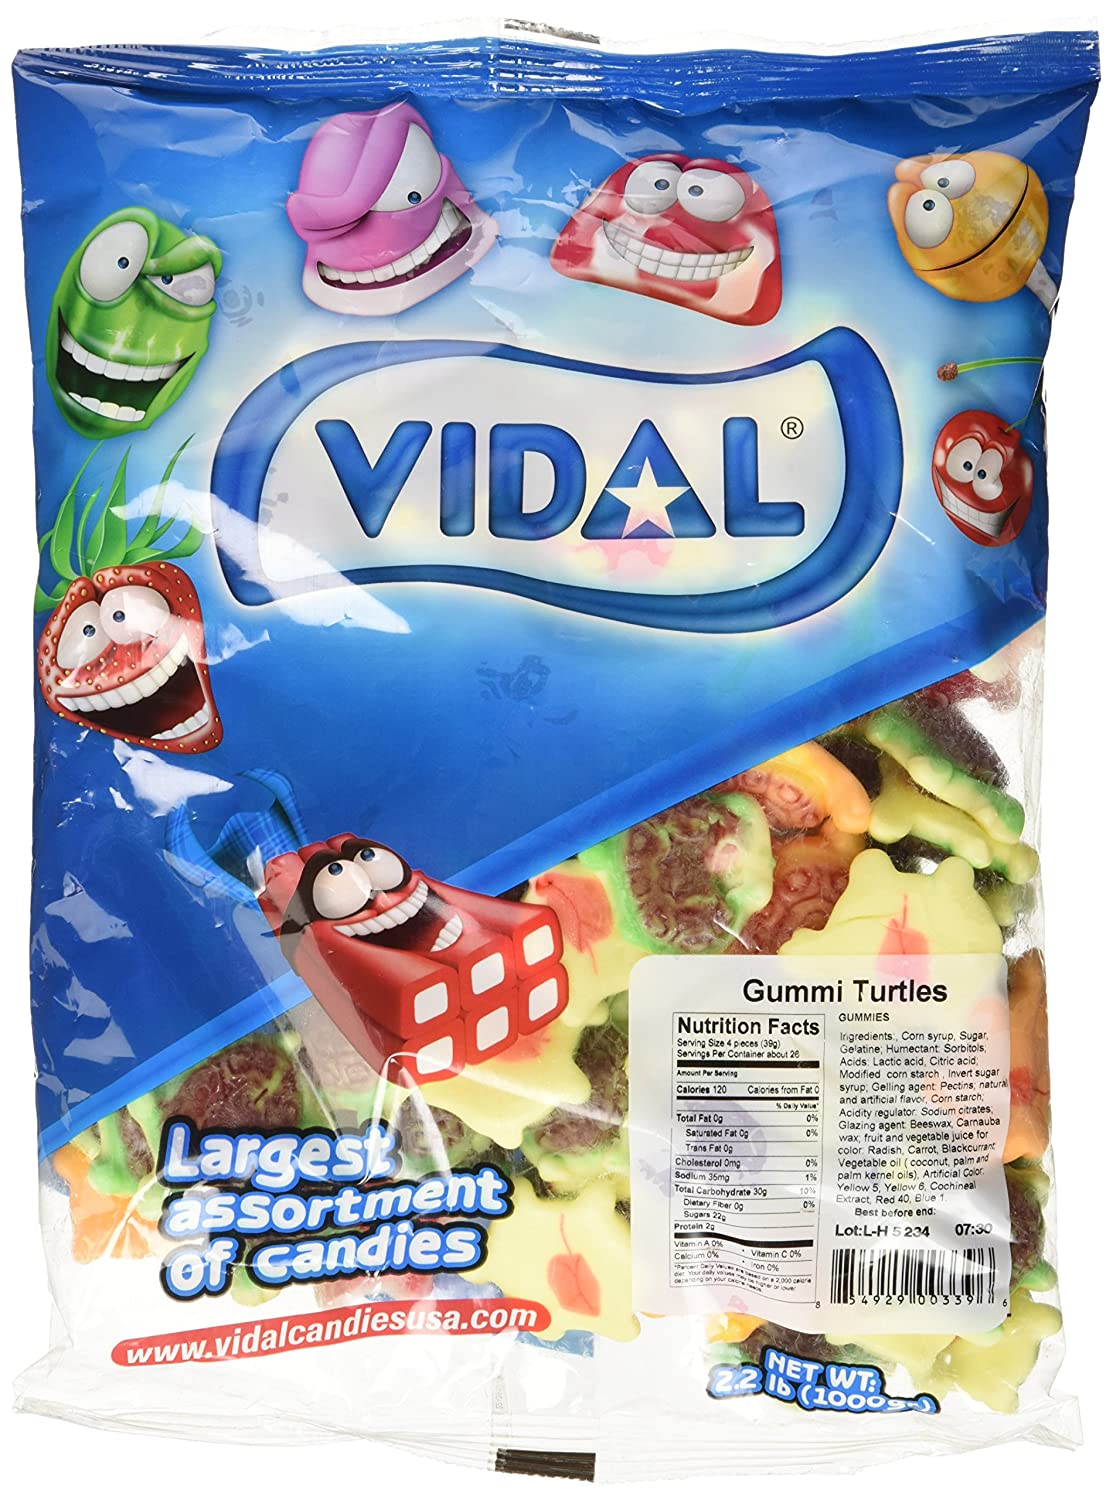 Vidal Gummi Turtles 2.2lb